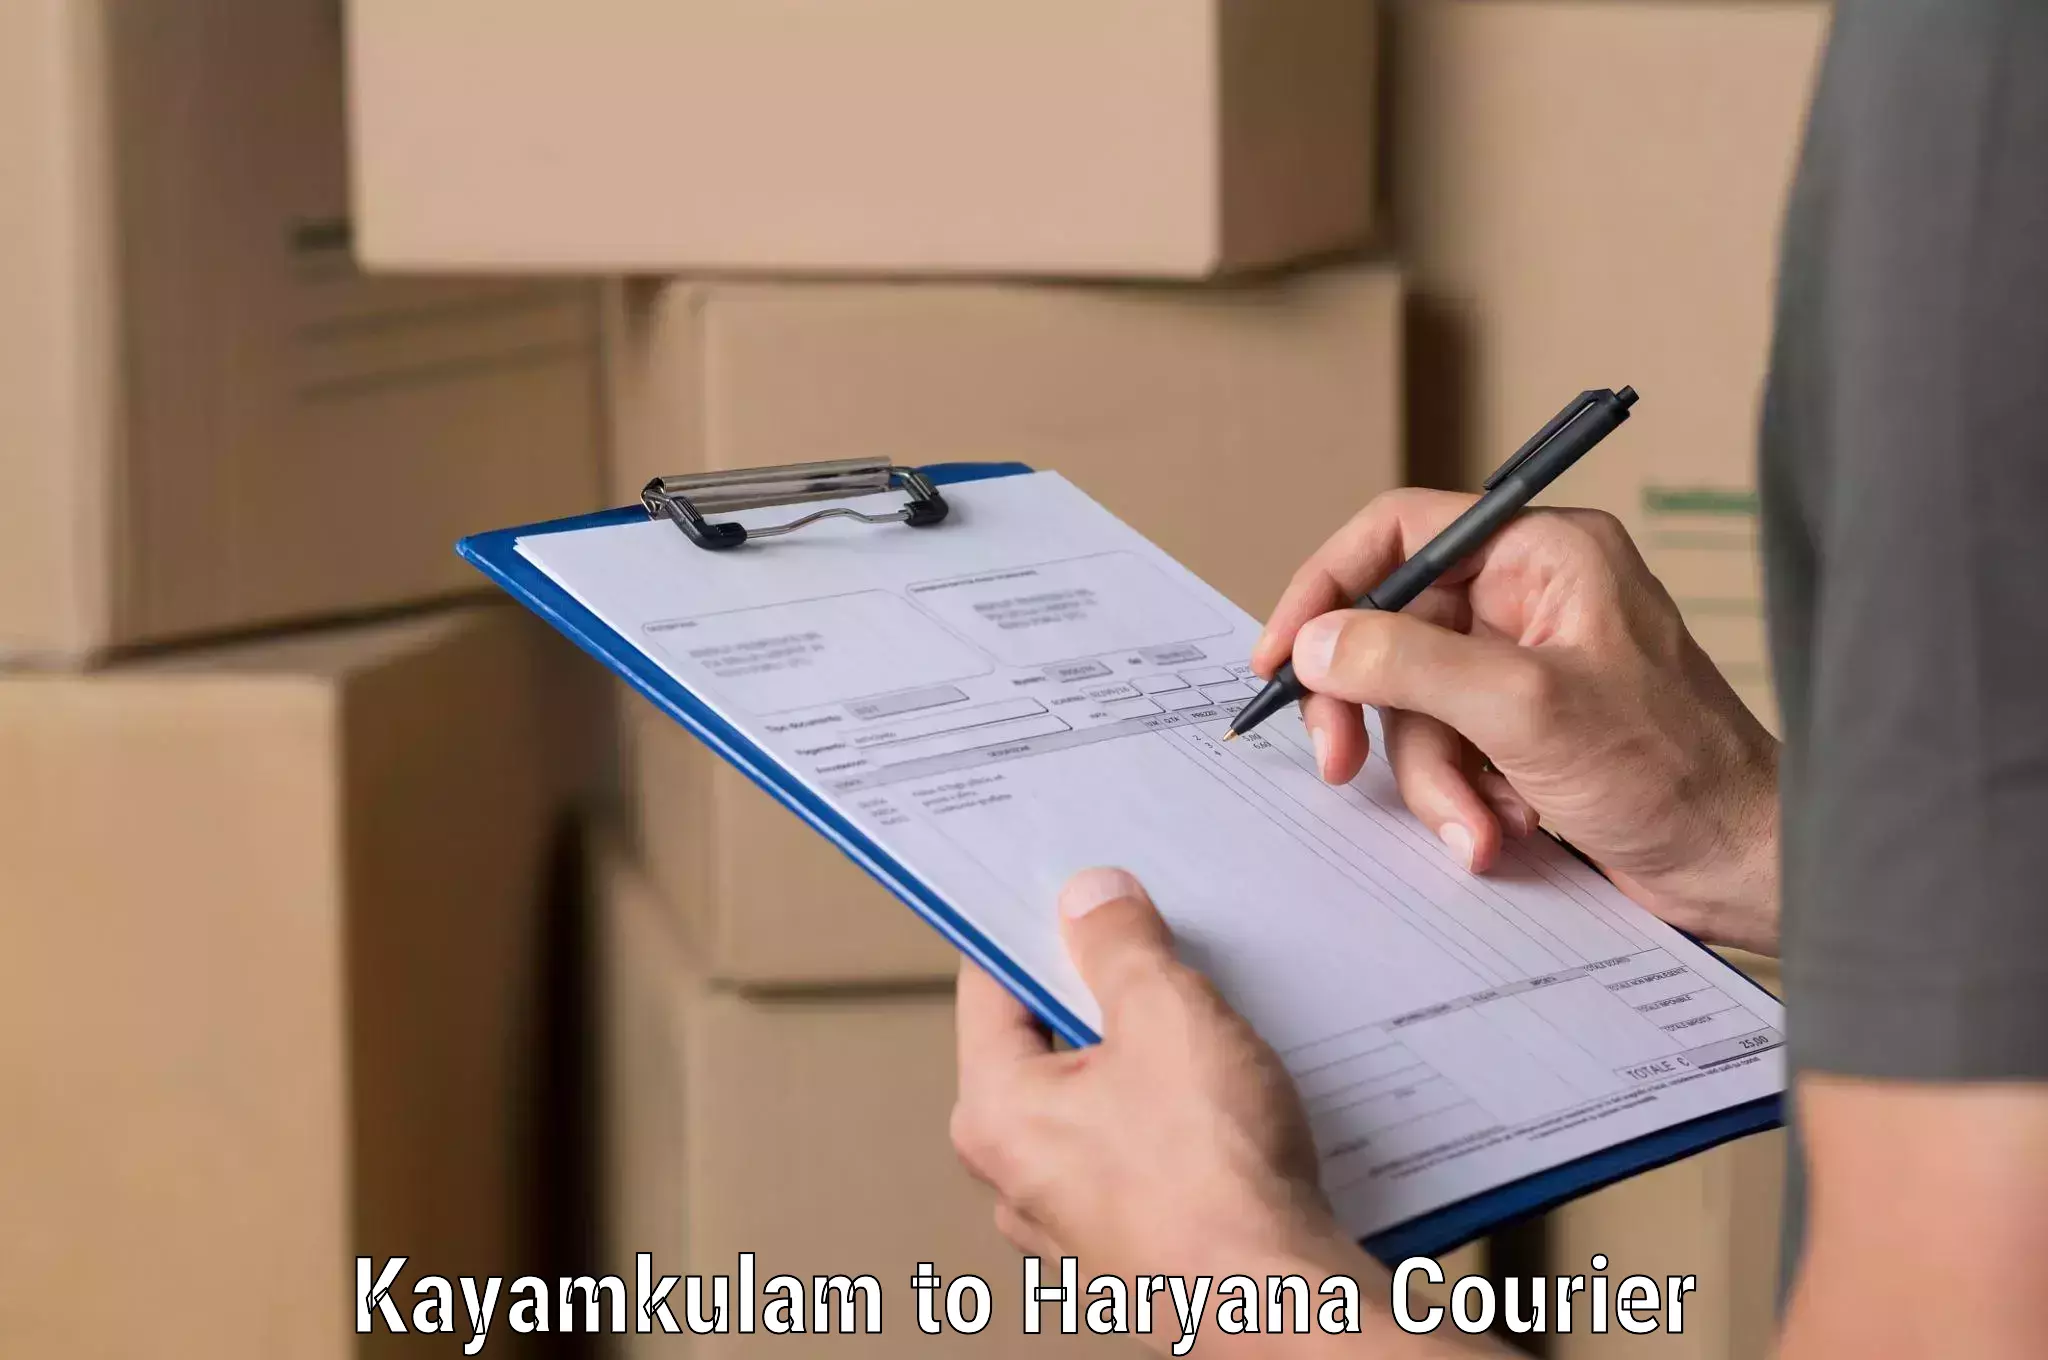 Cash on delivery service Kayamkulam to IIIT Sonepat